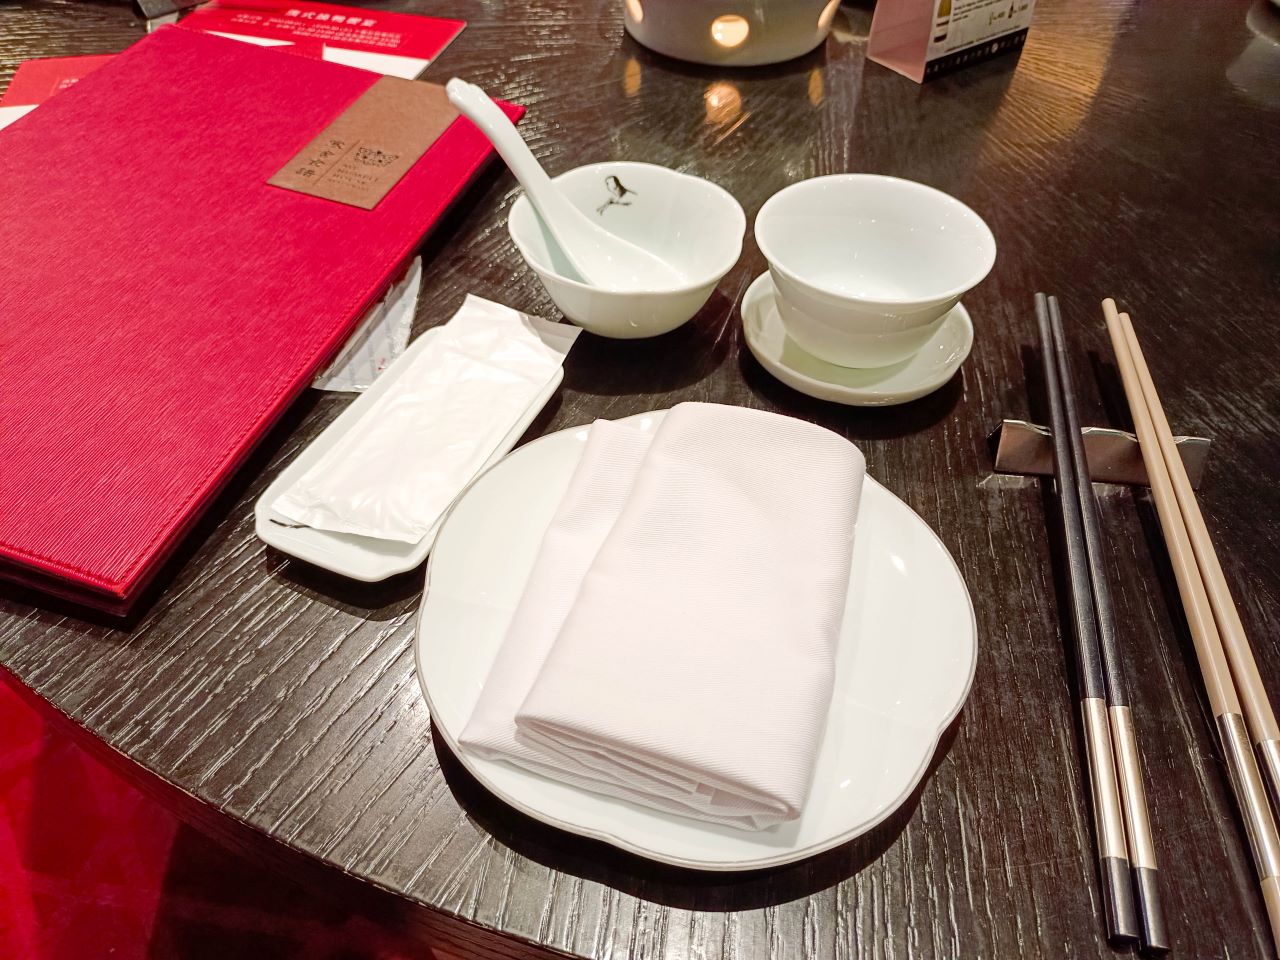 (劍潭捷運站)台北聚餐地點-台北圓山大飯店-金龍廳,美味烤鴨港點很值得一吃 @Nancy將的生活筆計本